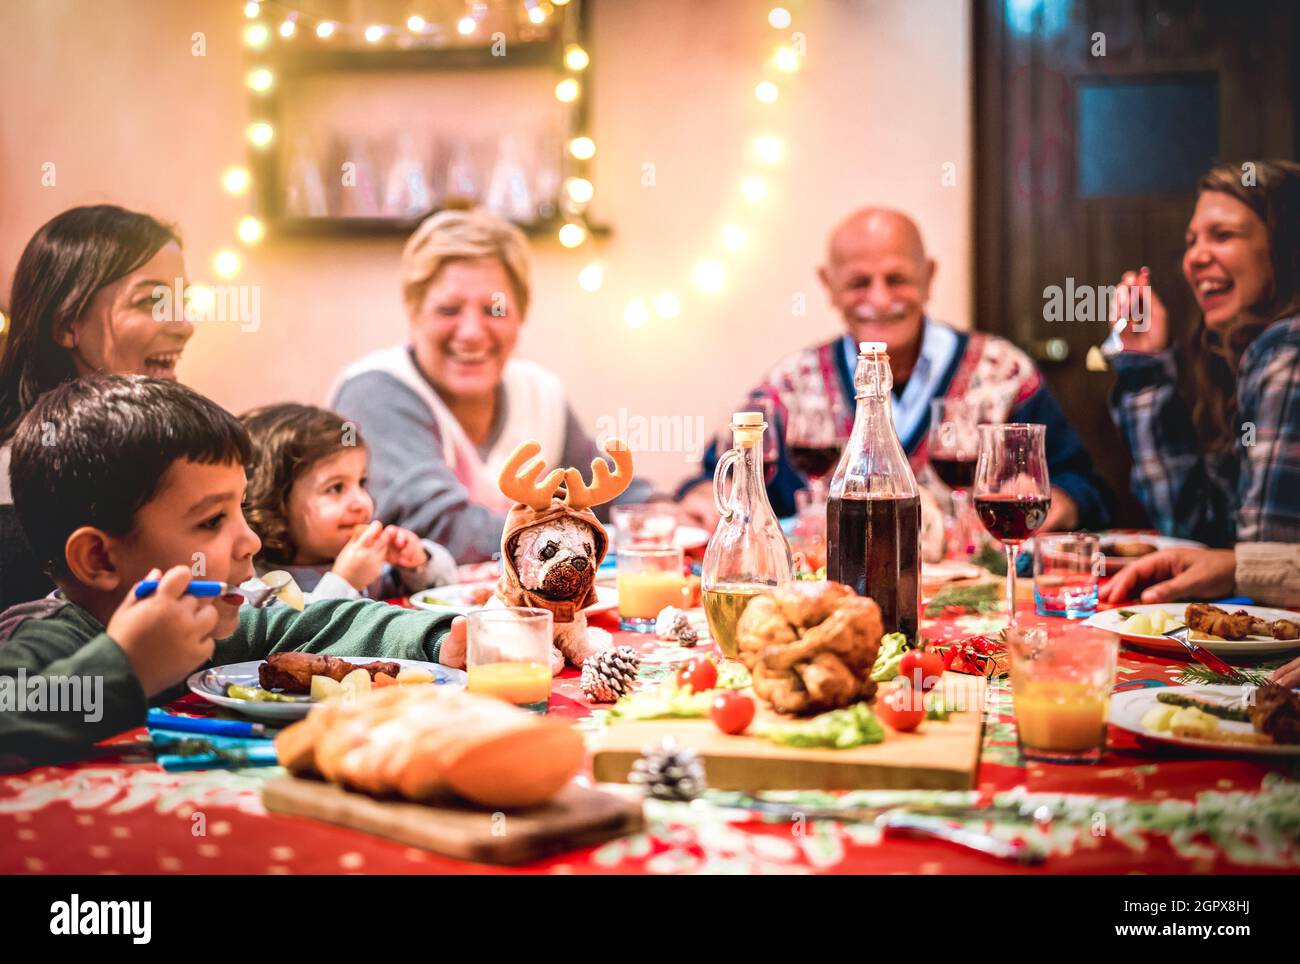 Multi Generation große Familie mit Spaß auf weihnachtsessen Party - Winterurlaub Weihnachten Konzept mit Großeltern und Kinder essen zusammen zu Hause Stockfoto